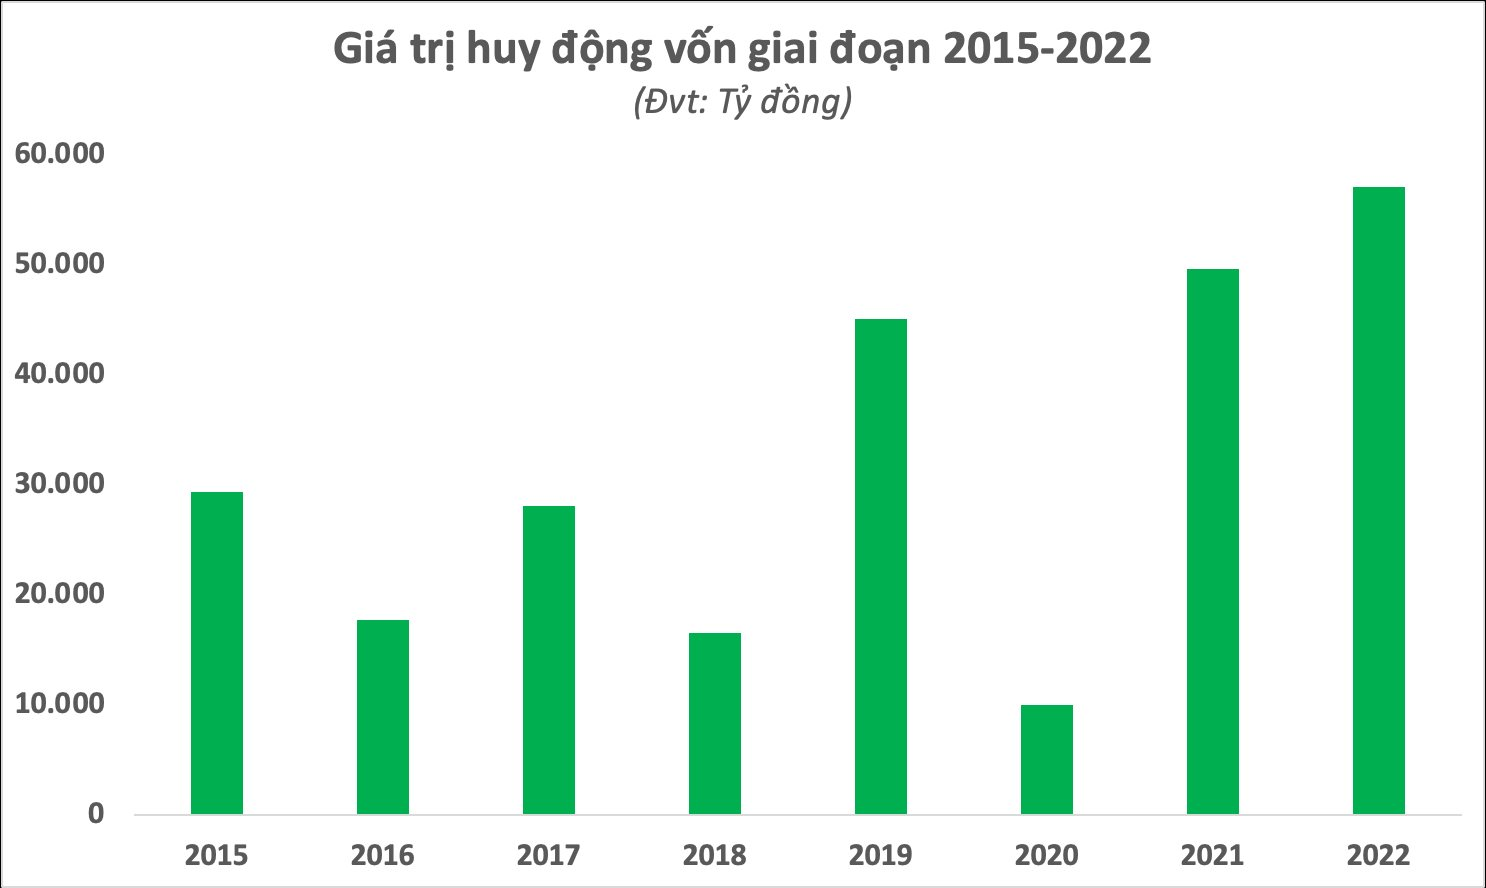 Sau 23 năm hoạt động của thị trường chứng khoán Việt Nam: Phổ cập hơn 7 triệu tài khoản, khẳng định vị thế của kênh dẫn vốn quan trọng trong nền kinh tế - Ảnh 7.